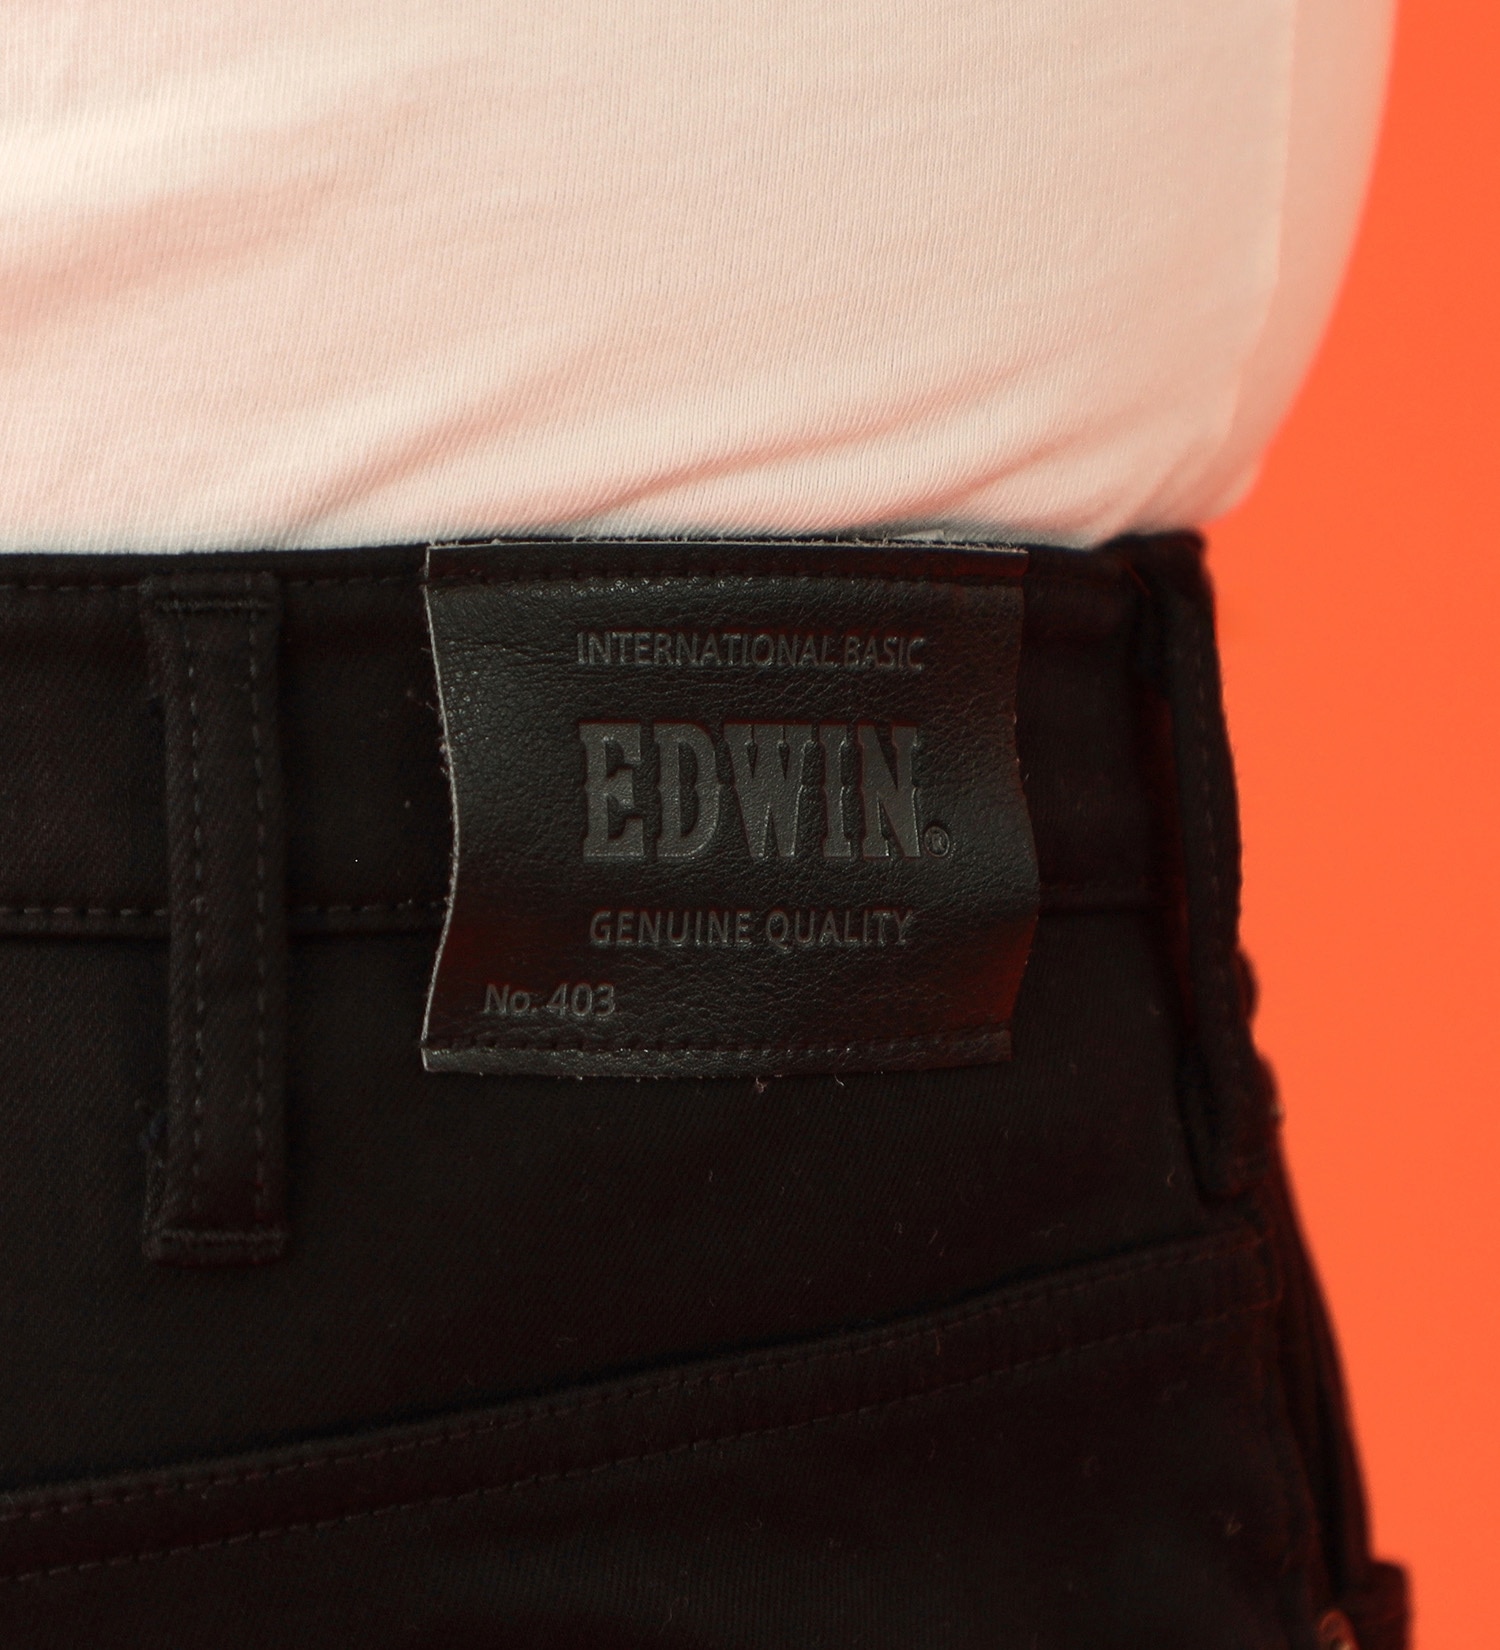 EDWIN(エドウイン)の【BLACKFRIDAY】【大きいサイズ】2層で暖かい EDWIN インターナショナルベーシック レギュラーストレートパンツ403 WILD FIRE 2層ボンディング構造 【暖】|パンツ/パンツ/メンズ|ブラック